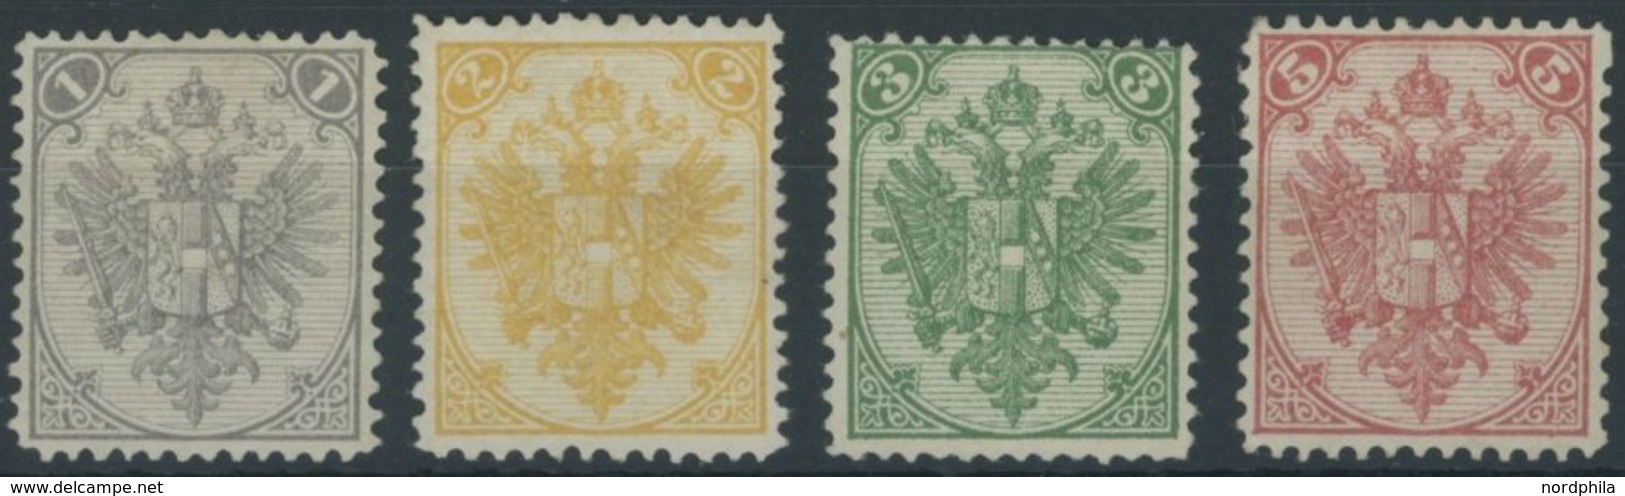 BOSNIEN UND HERZEGOWINA 1-4I *, 1879, 1 - 5 Kr. Steindruck, Falzreste, 4 Prachtwerte, Signiert, Mi. 135.- - Bosnia And Herzegovina